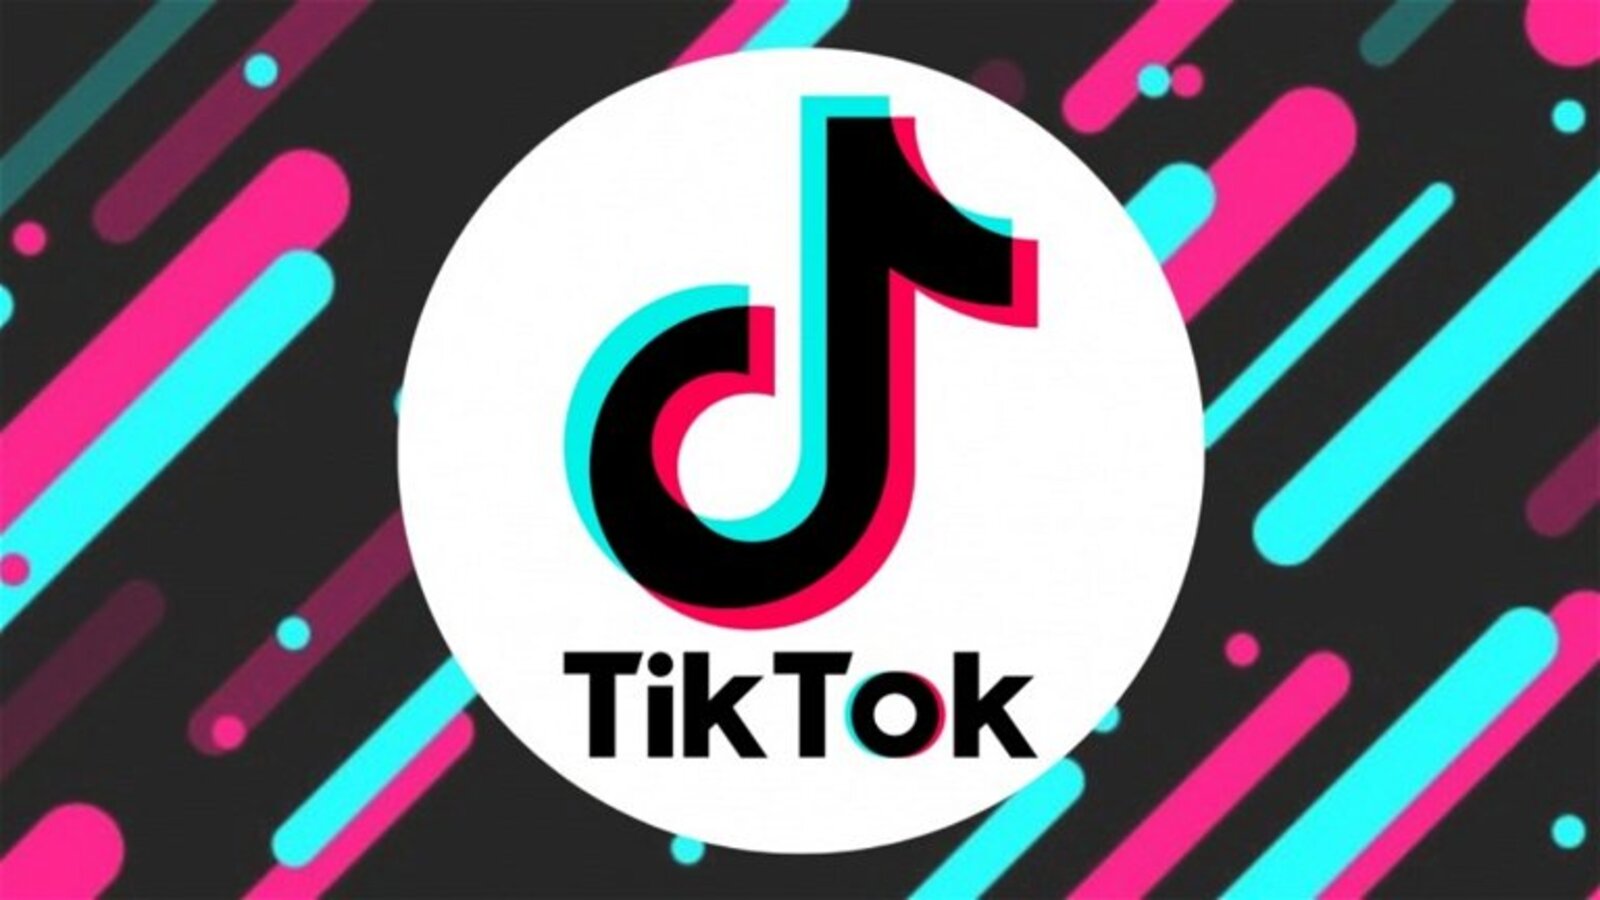 Uzun Videolar, TikTok'un Kullanıcı Tabanını ve Kullanım Süresini Artırabilir